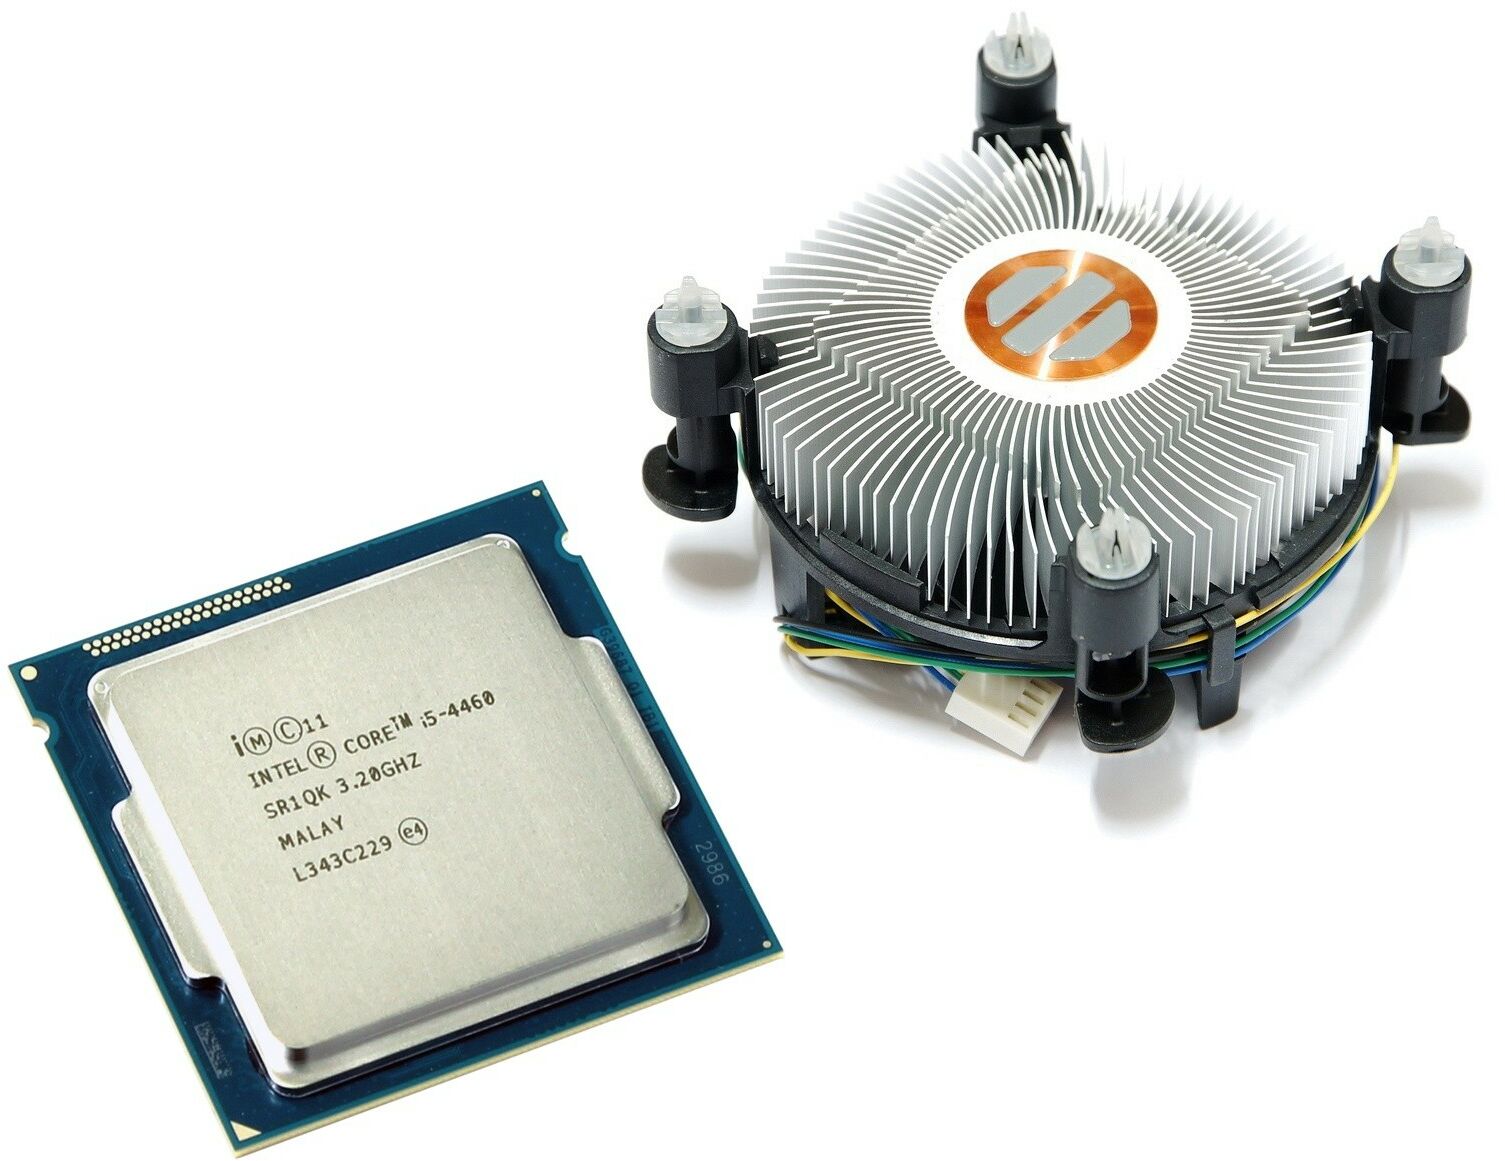 Intel Core i5-4460 3,40 GHz + chłodzenie